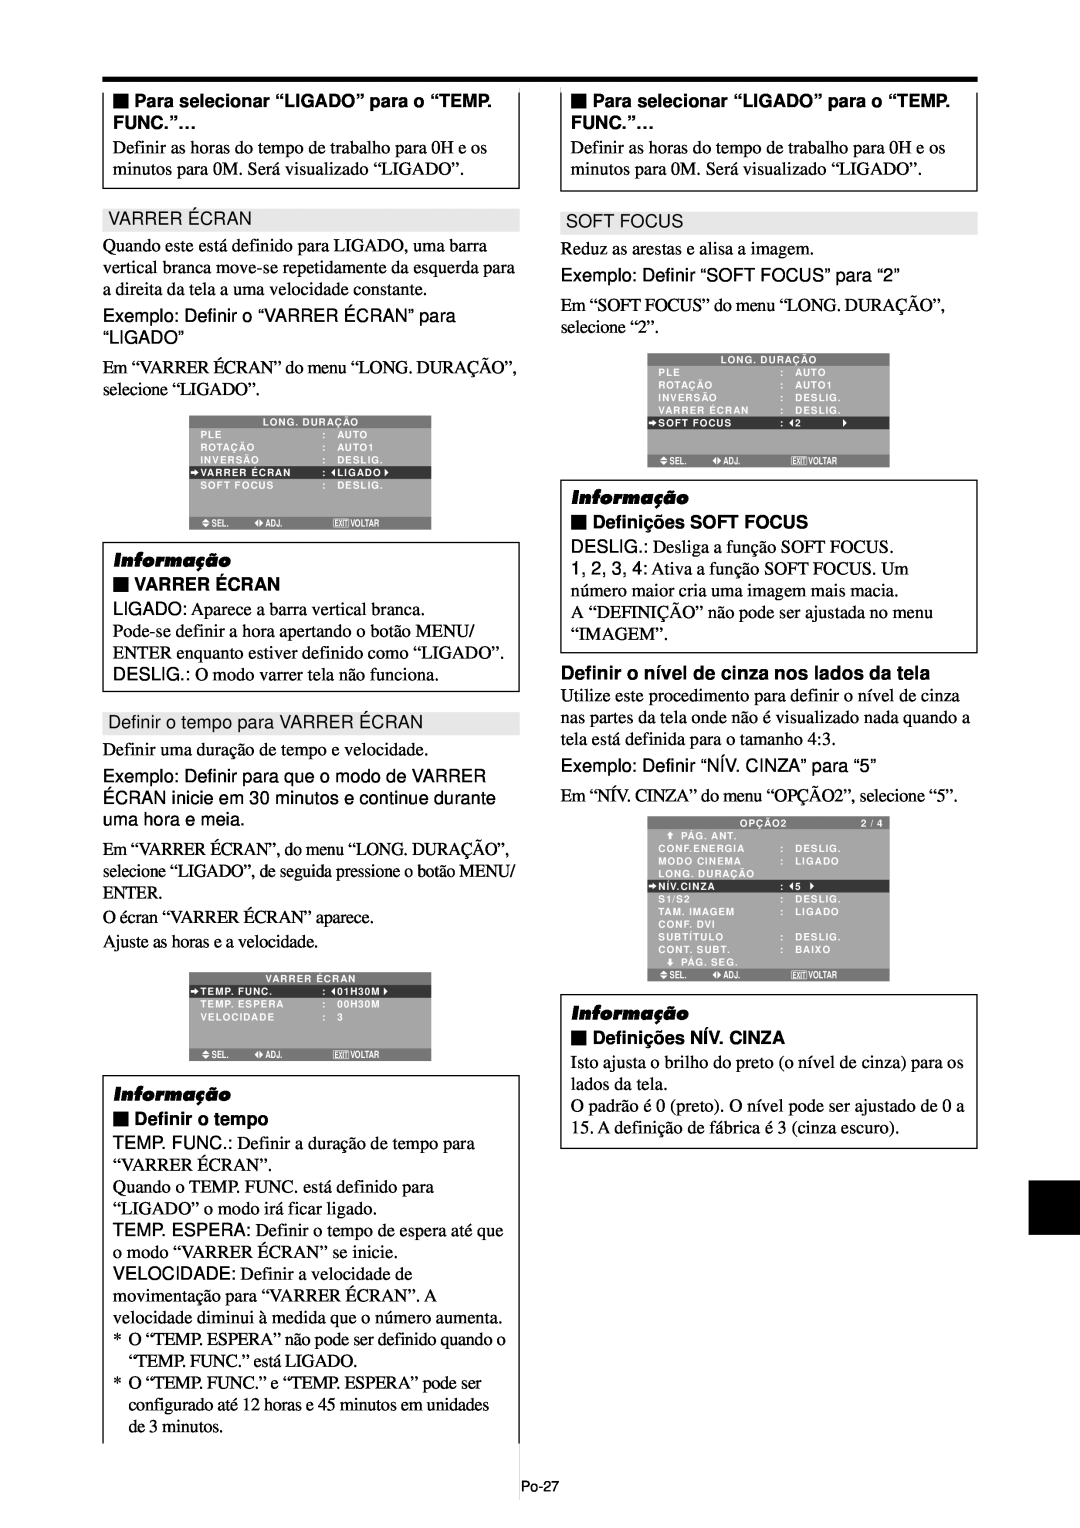 NEC PX-61XM4A manual Definir o nível de cinza nos lados da tela, Para selecionar “LIGADO” para o “TEMP. FUNC.”…, Informação 